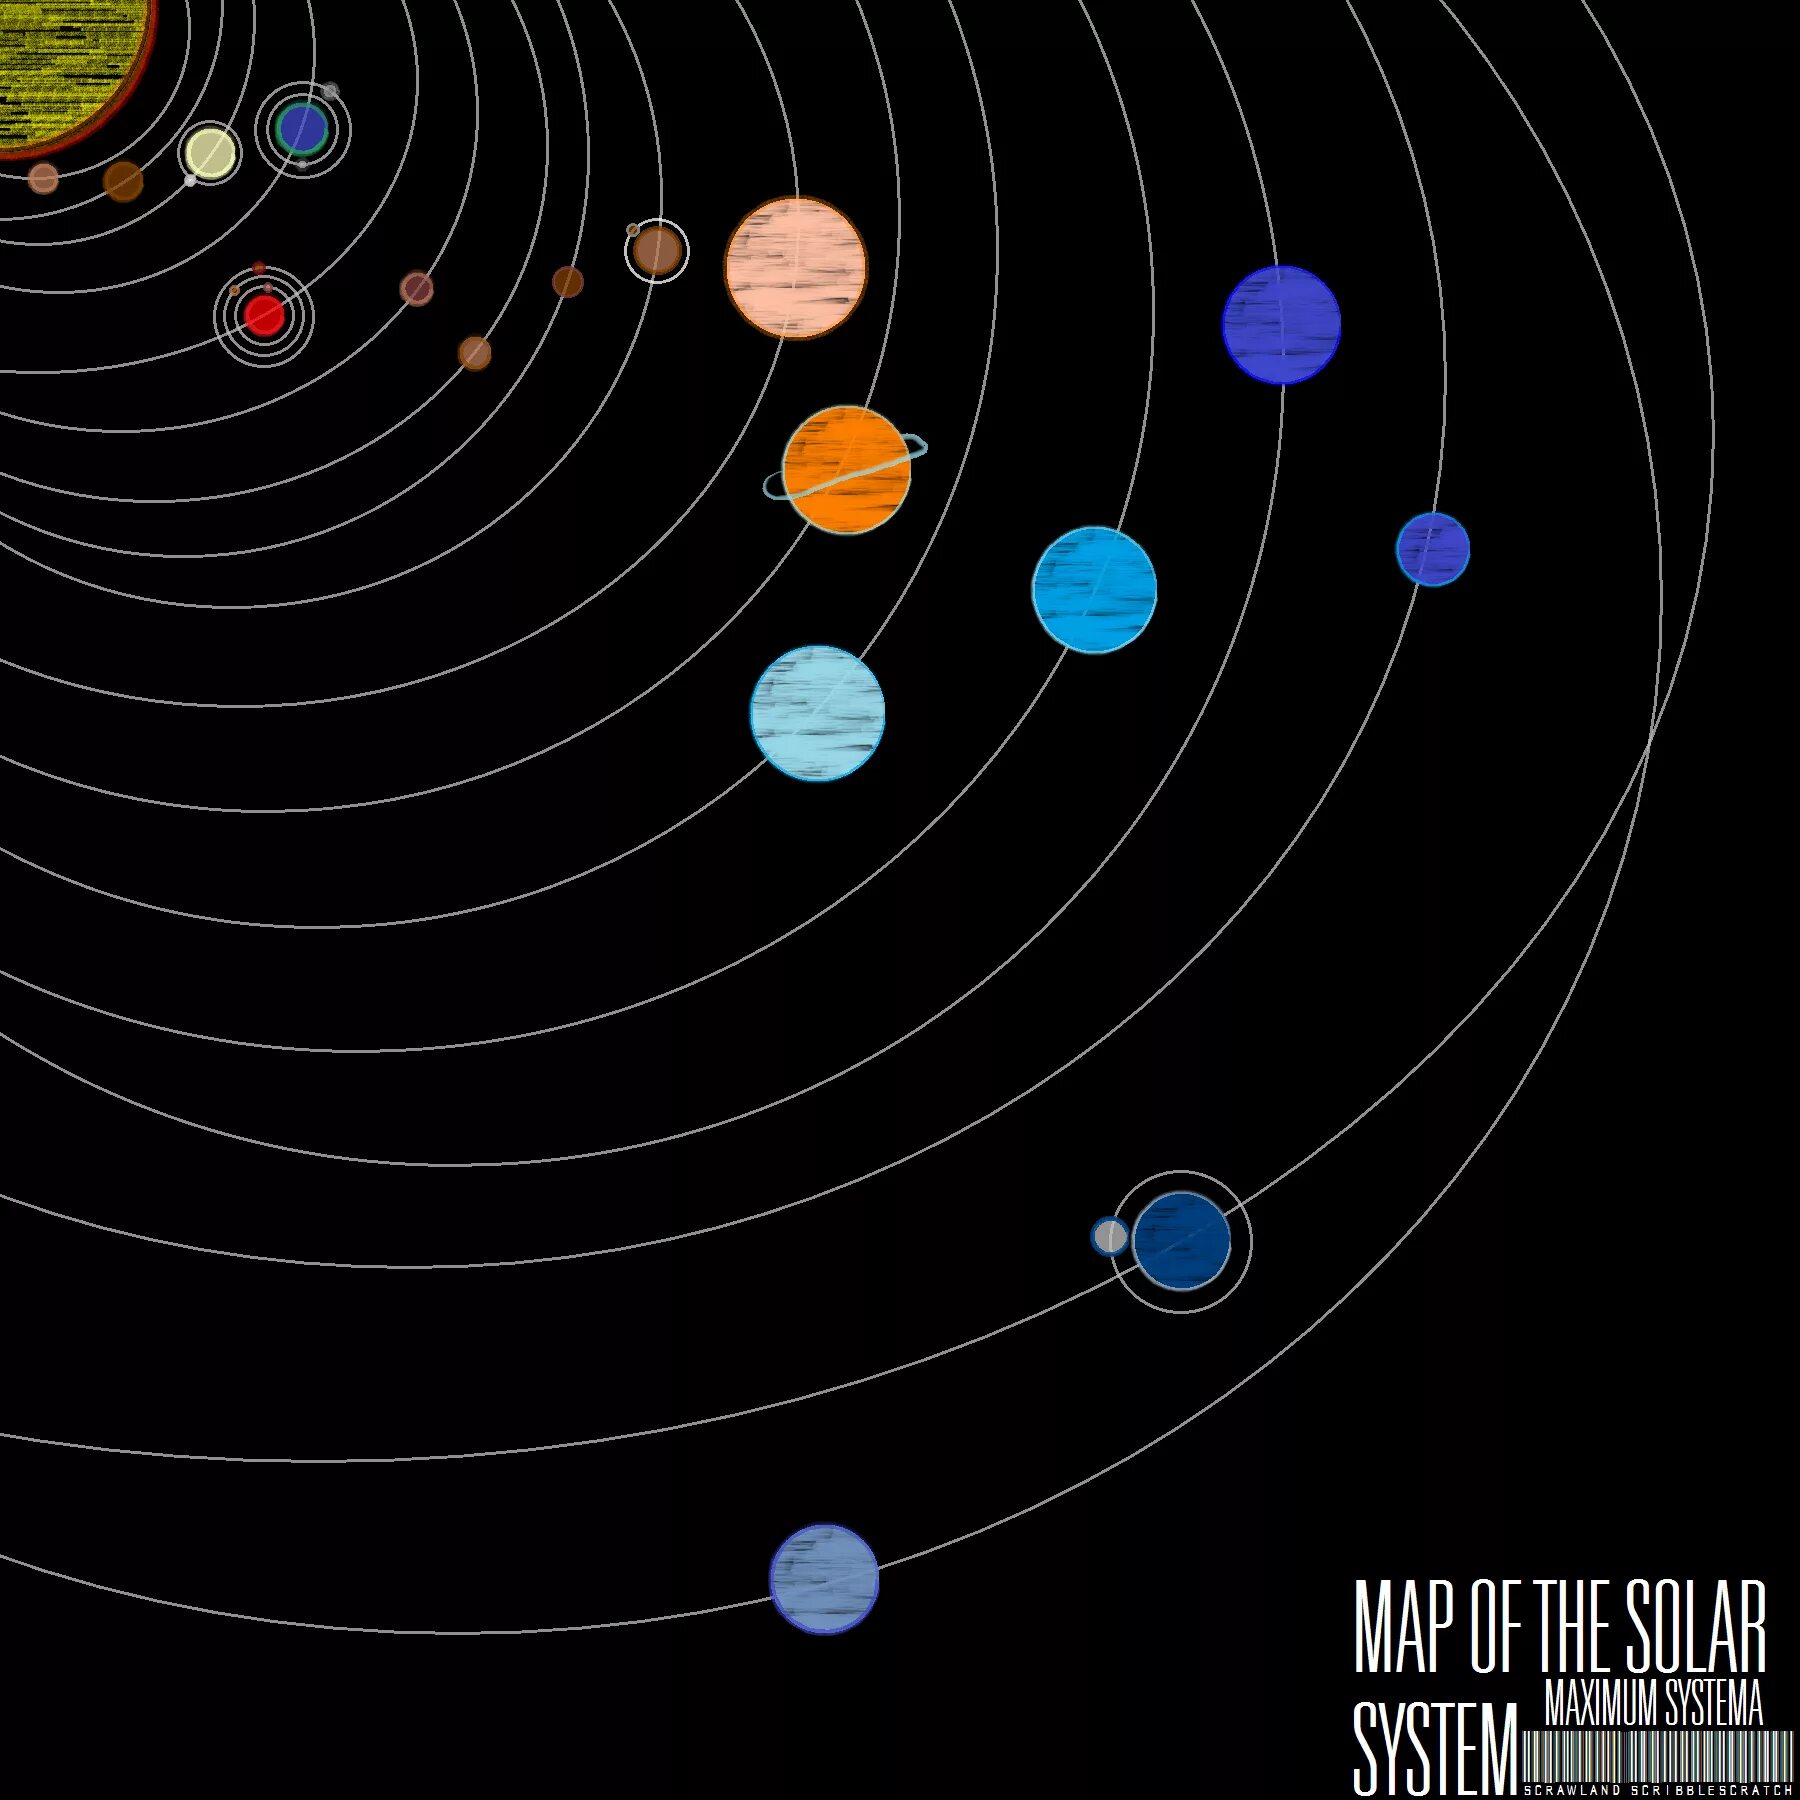 Solar system map. Карта солнечной системы. Расположение планет. Расположение планет солнечной системы. Планетарная модель солнечной системы.